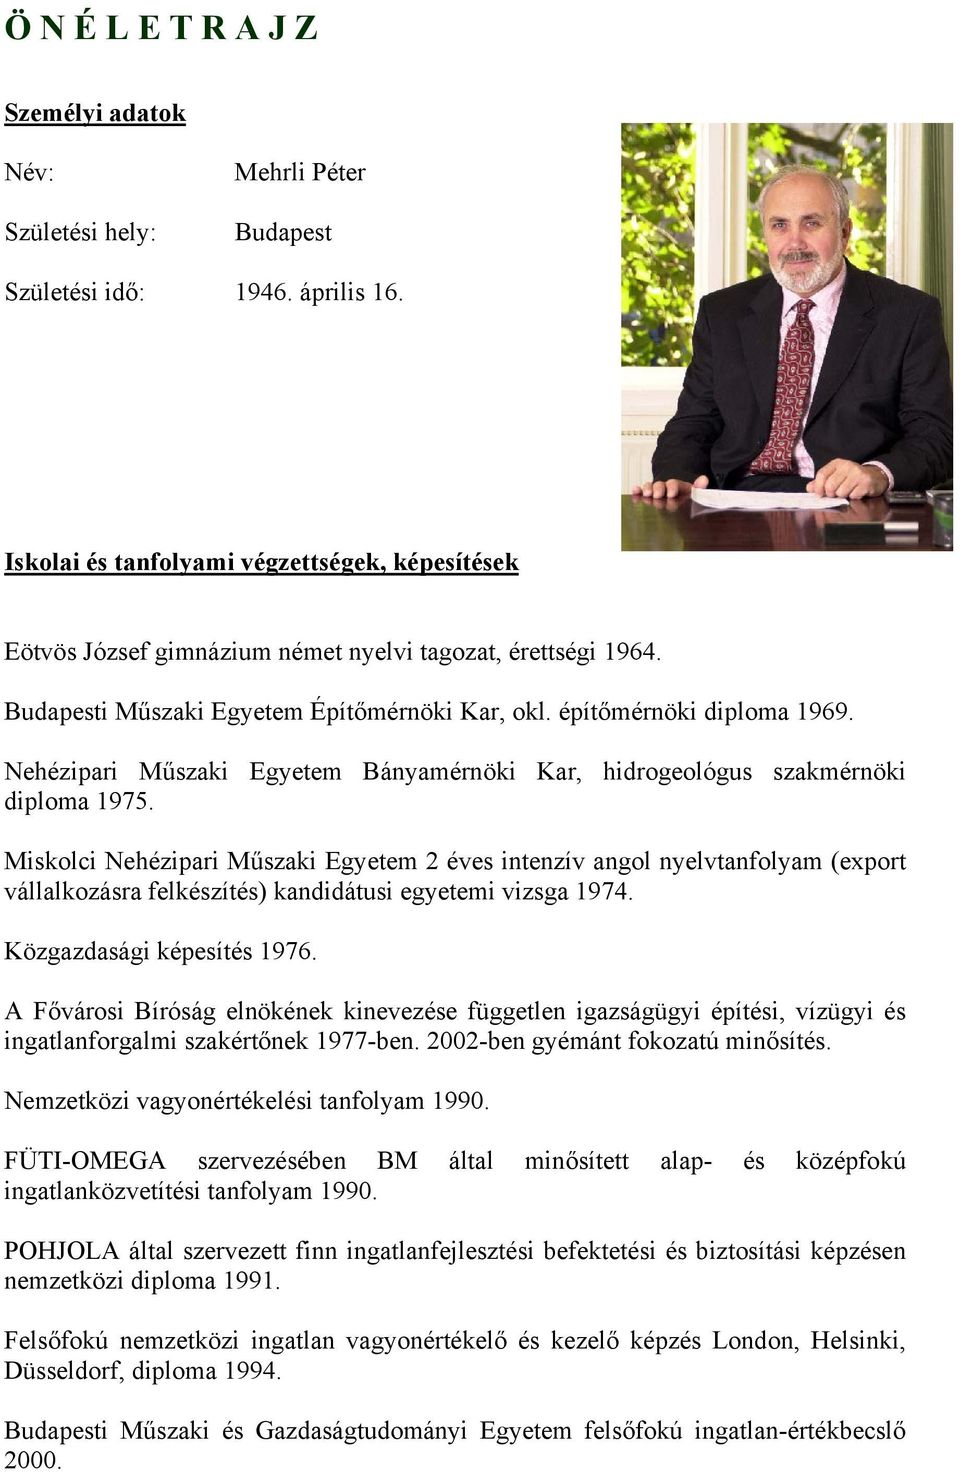 Nehézipari Műszaki Egyetem Bányamérnöki Kar, hidrogeológus szakmérnöki diploma 1975.